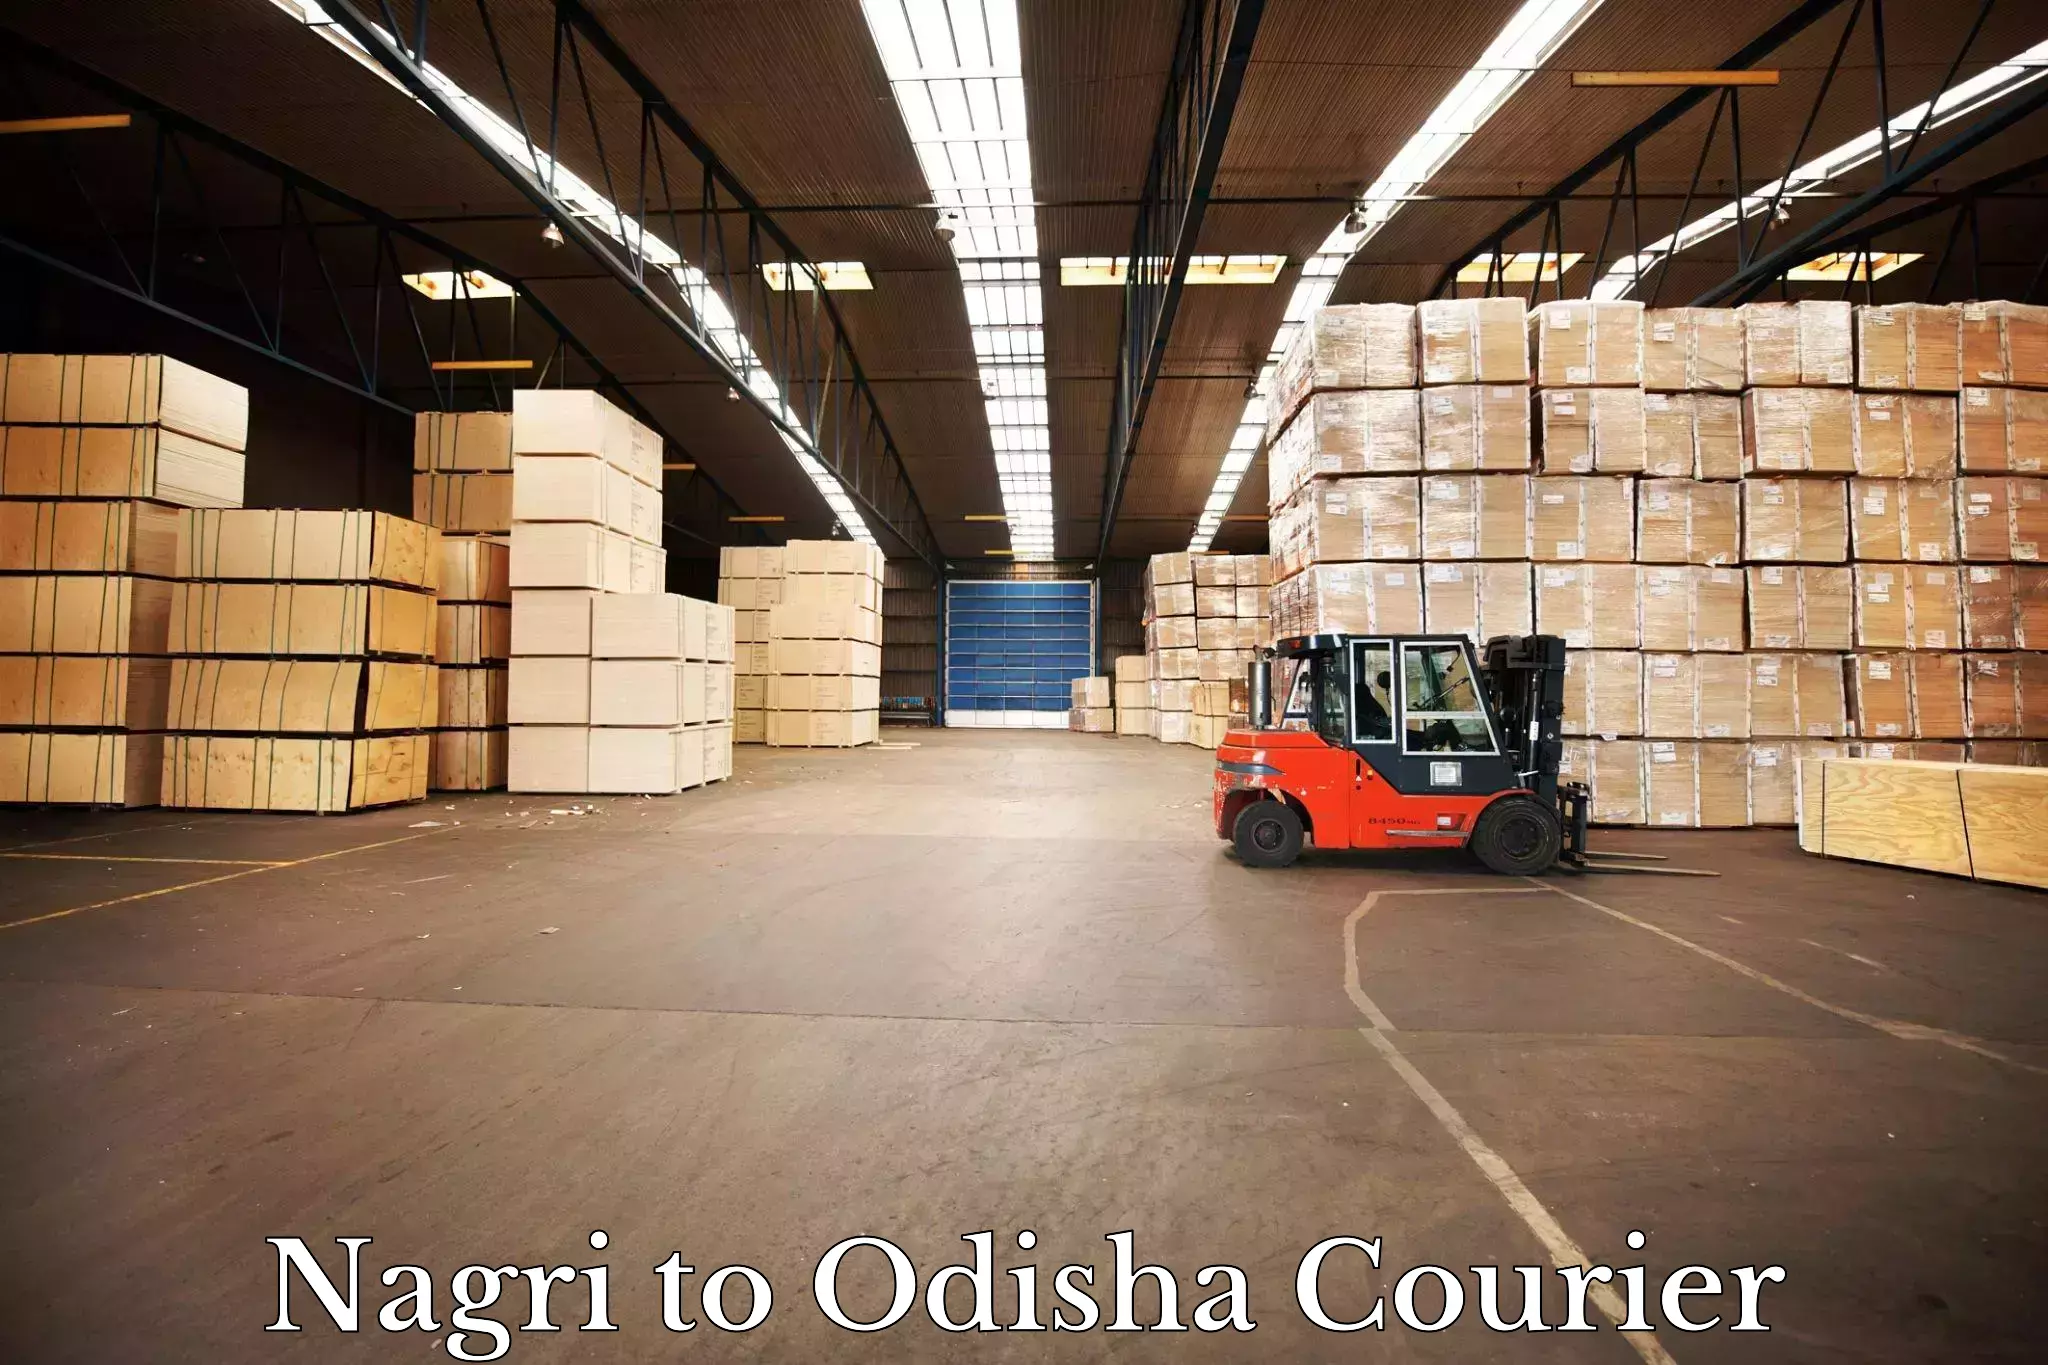 Courier service partnerships Nagri to Babujang